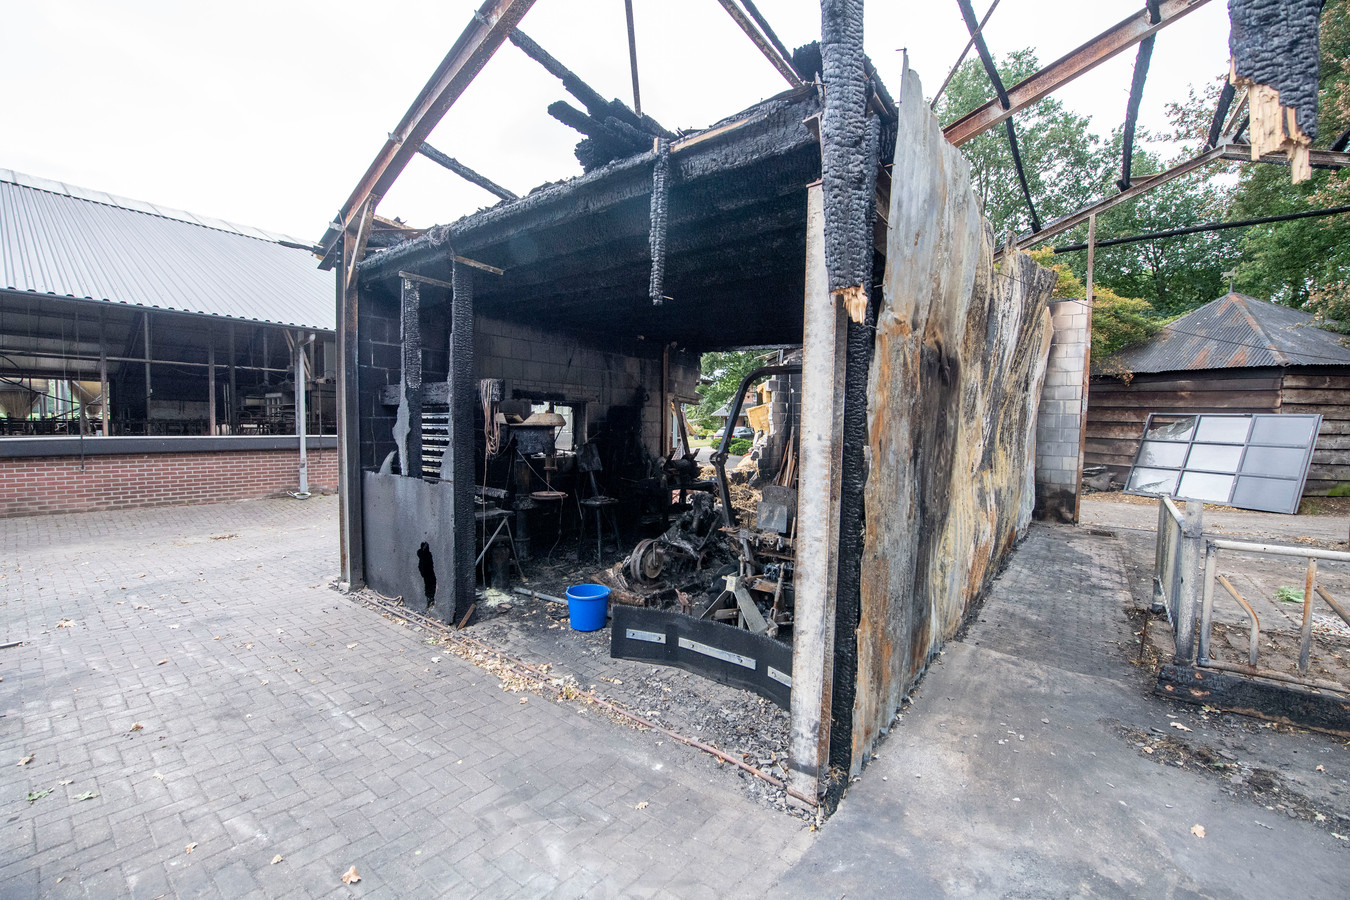 De brand ontstond vermoedelijk aan de voorkant van de schuur in de werkplaats met gereedschap. De oorzaak blijft onbekend.